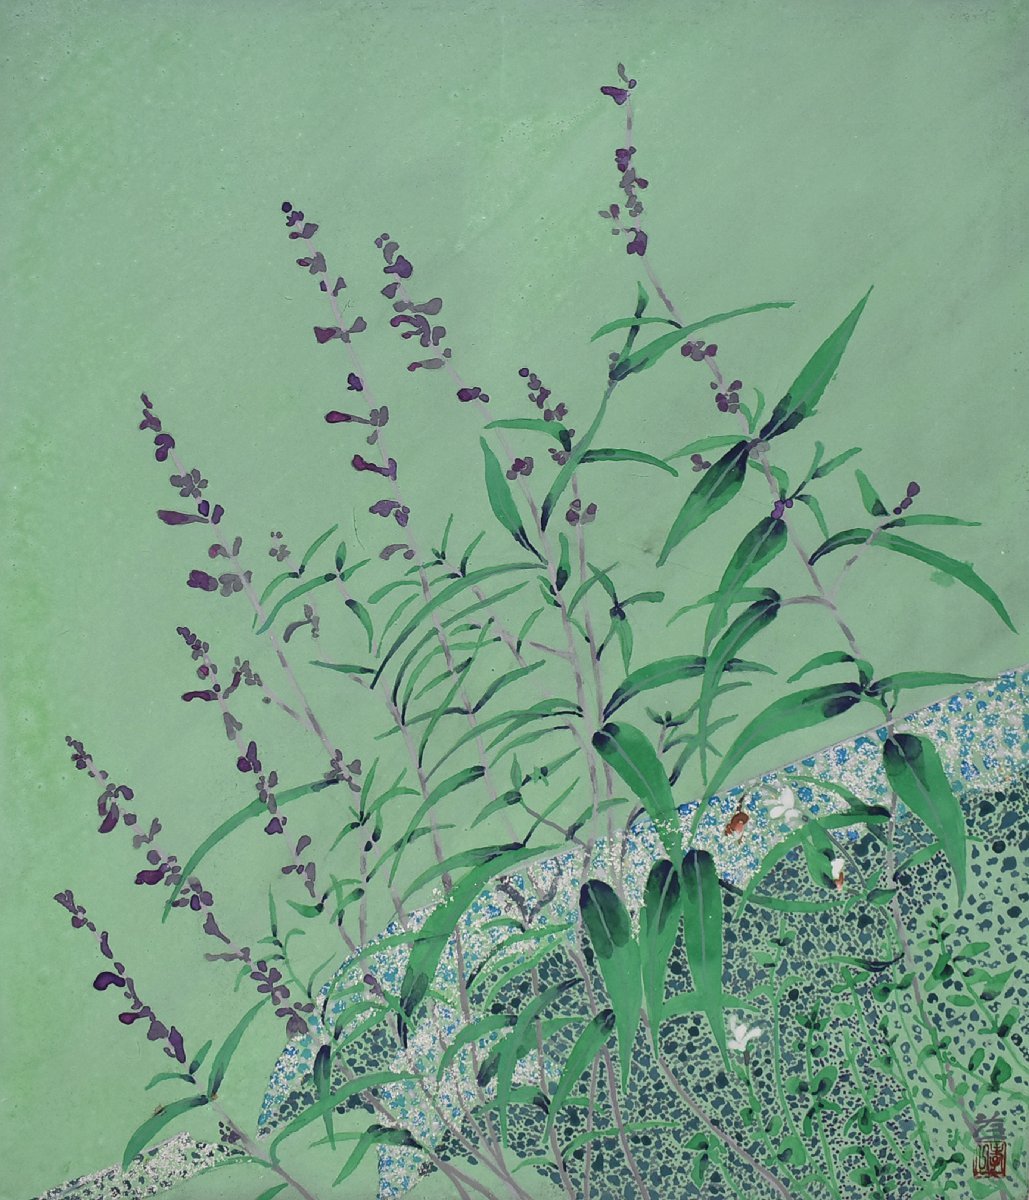 [सेइको गैलरी - प्रदर्शन पर 5500 आइटम! अपना पसंदीदा काम ढूंढें] फ्रेम के साथ लोकप्रिय जापानी चित्रकार कोइची सुजुकी 10एफ रिनरेन, चित्रकारी, जापानी पेंटिंग, फूल और पक्षी, पक्षी और जानवर